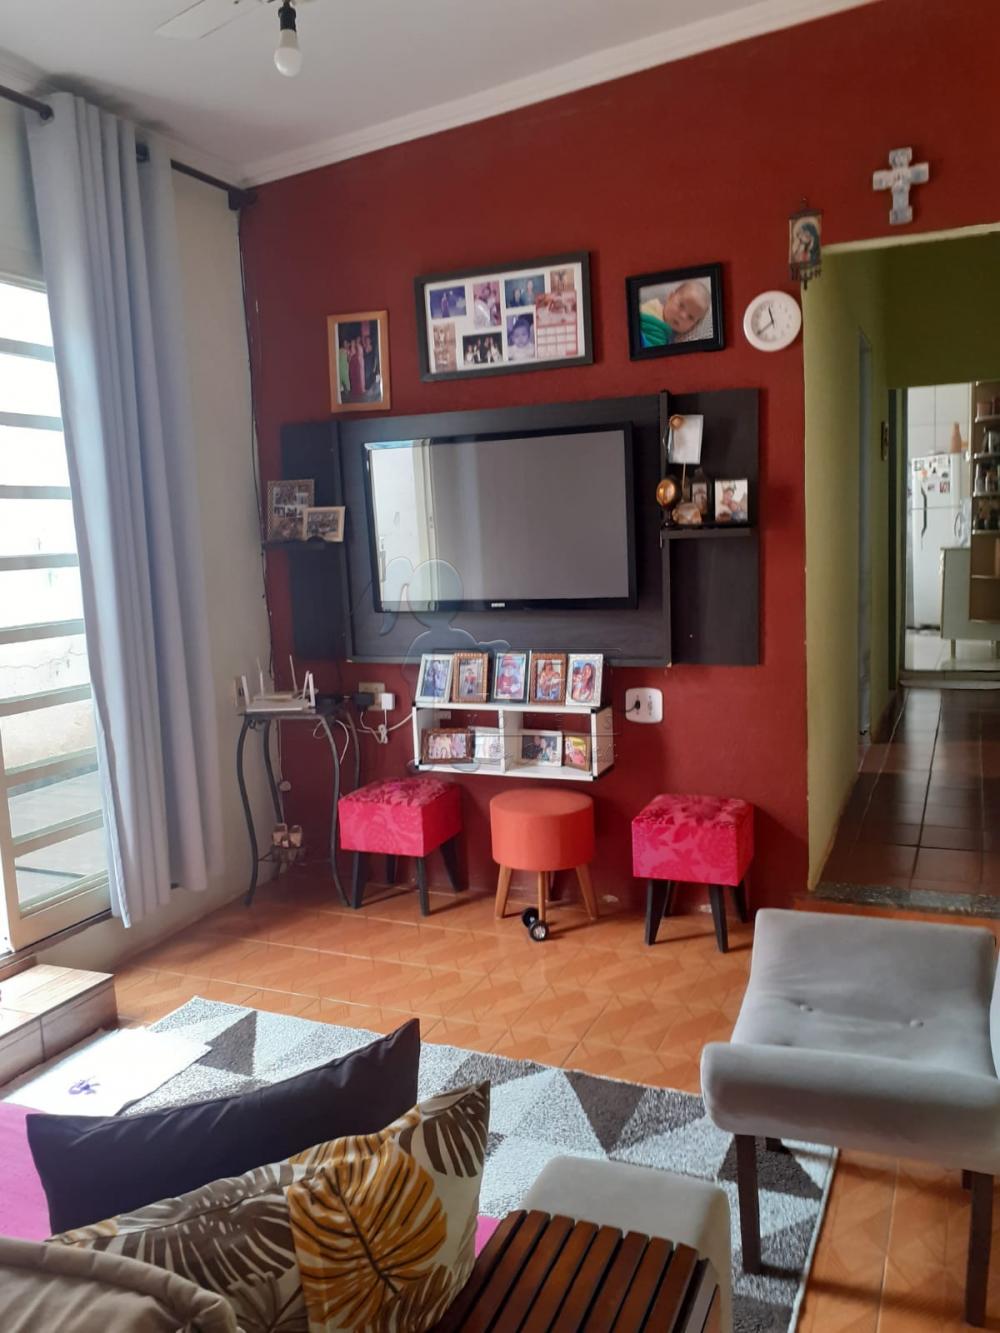 Comprar Casa / Padrão em Ribeirão Preto R$ 220.000,00 - Foto 1